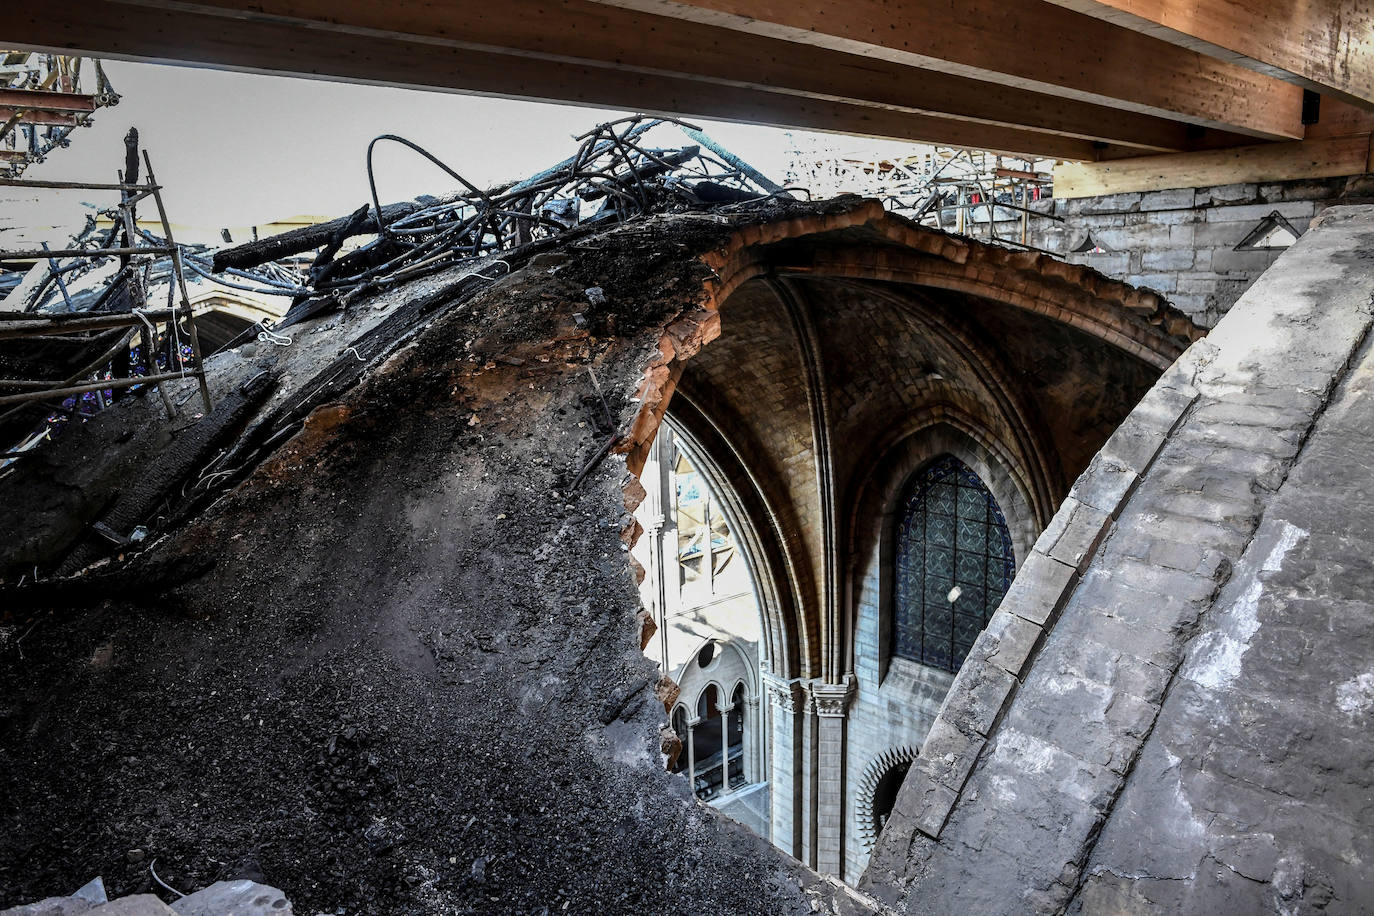 Han pasado tres meses del devastador incendio que en abril arrasaba parte de la cubierta de la catedral parisina y destruía su icónica aguja. Las obras de restauración deberán concluir en un plazo de cinco años, aunque, de momento, las tareas se centran en limpiar y consolidar la estructura.